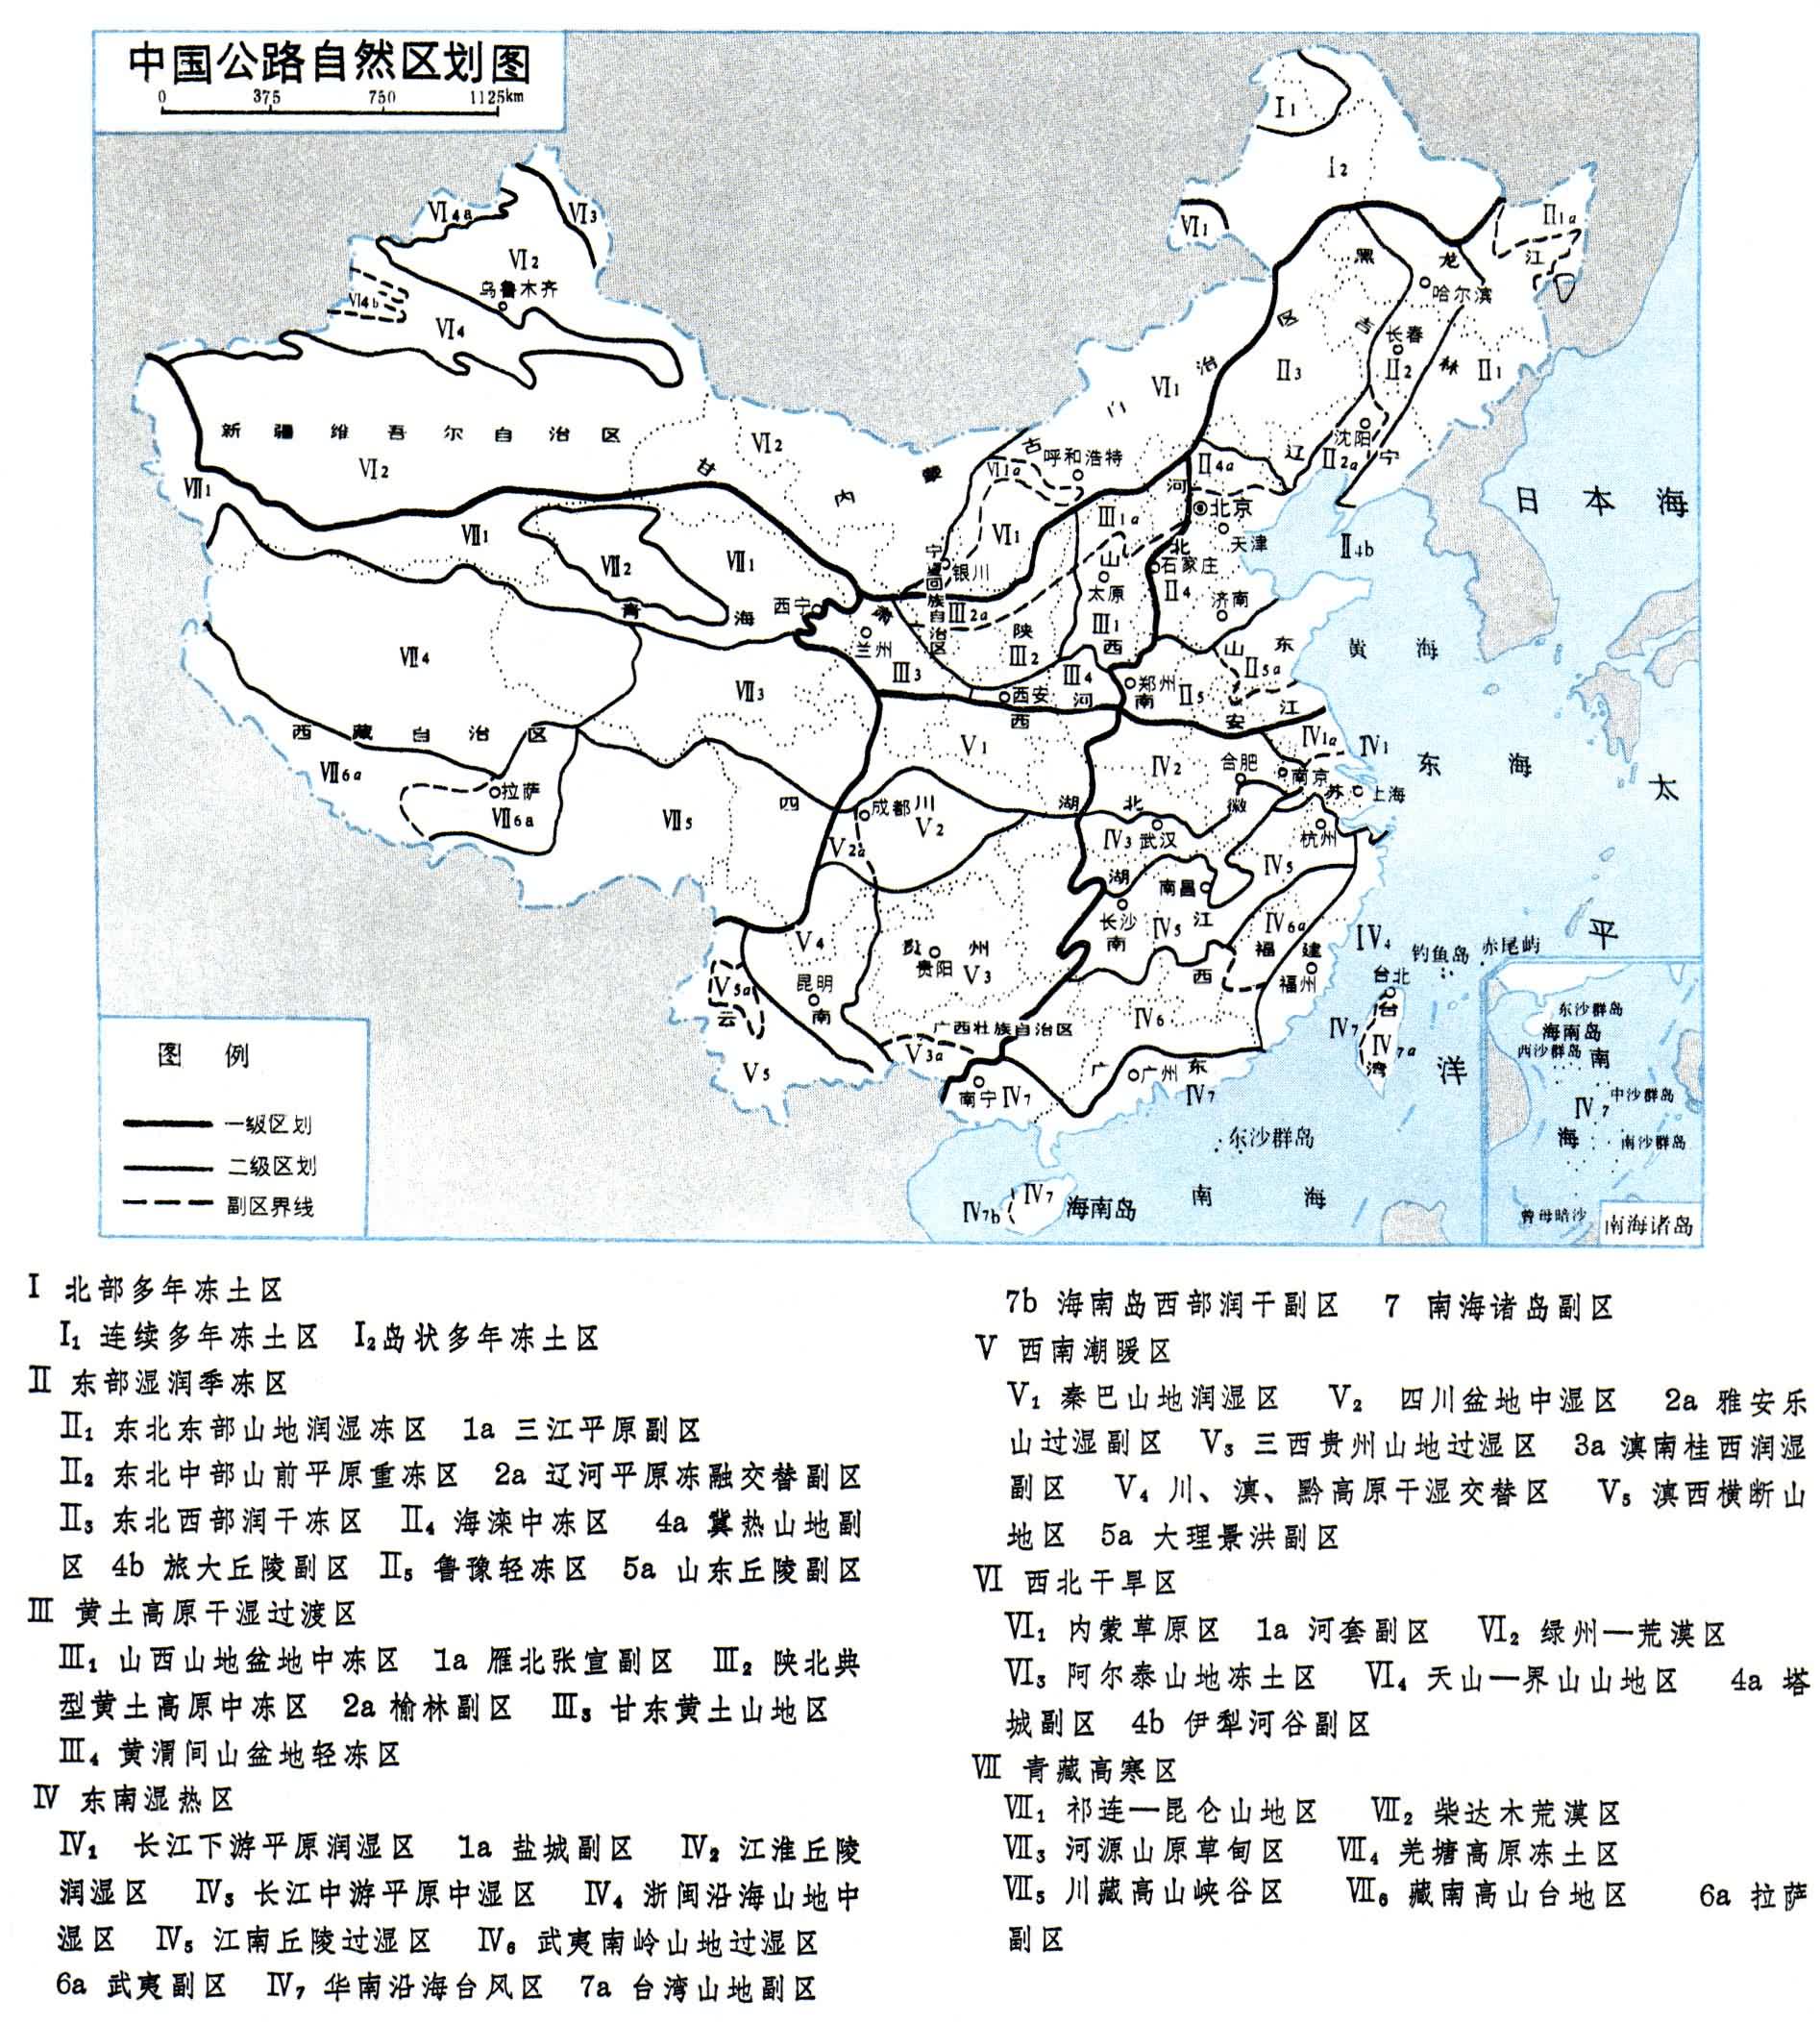 中国公路自然区划图.jpg